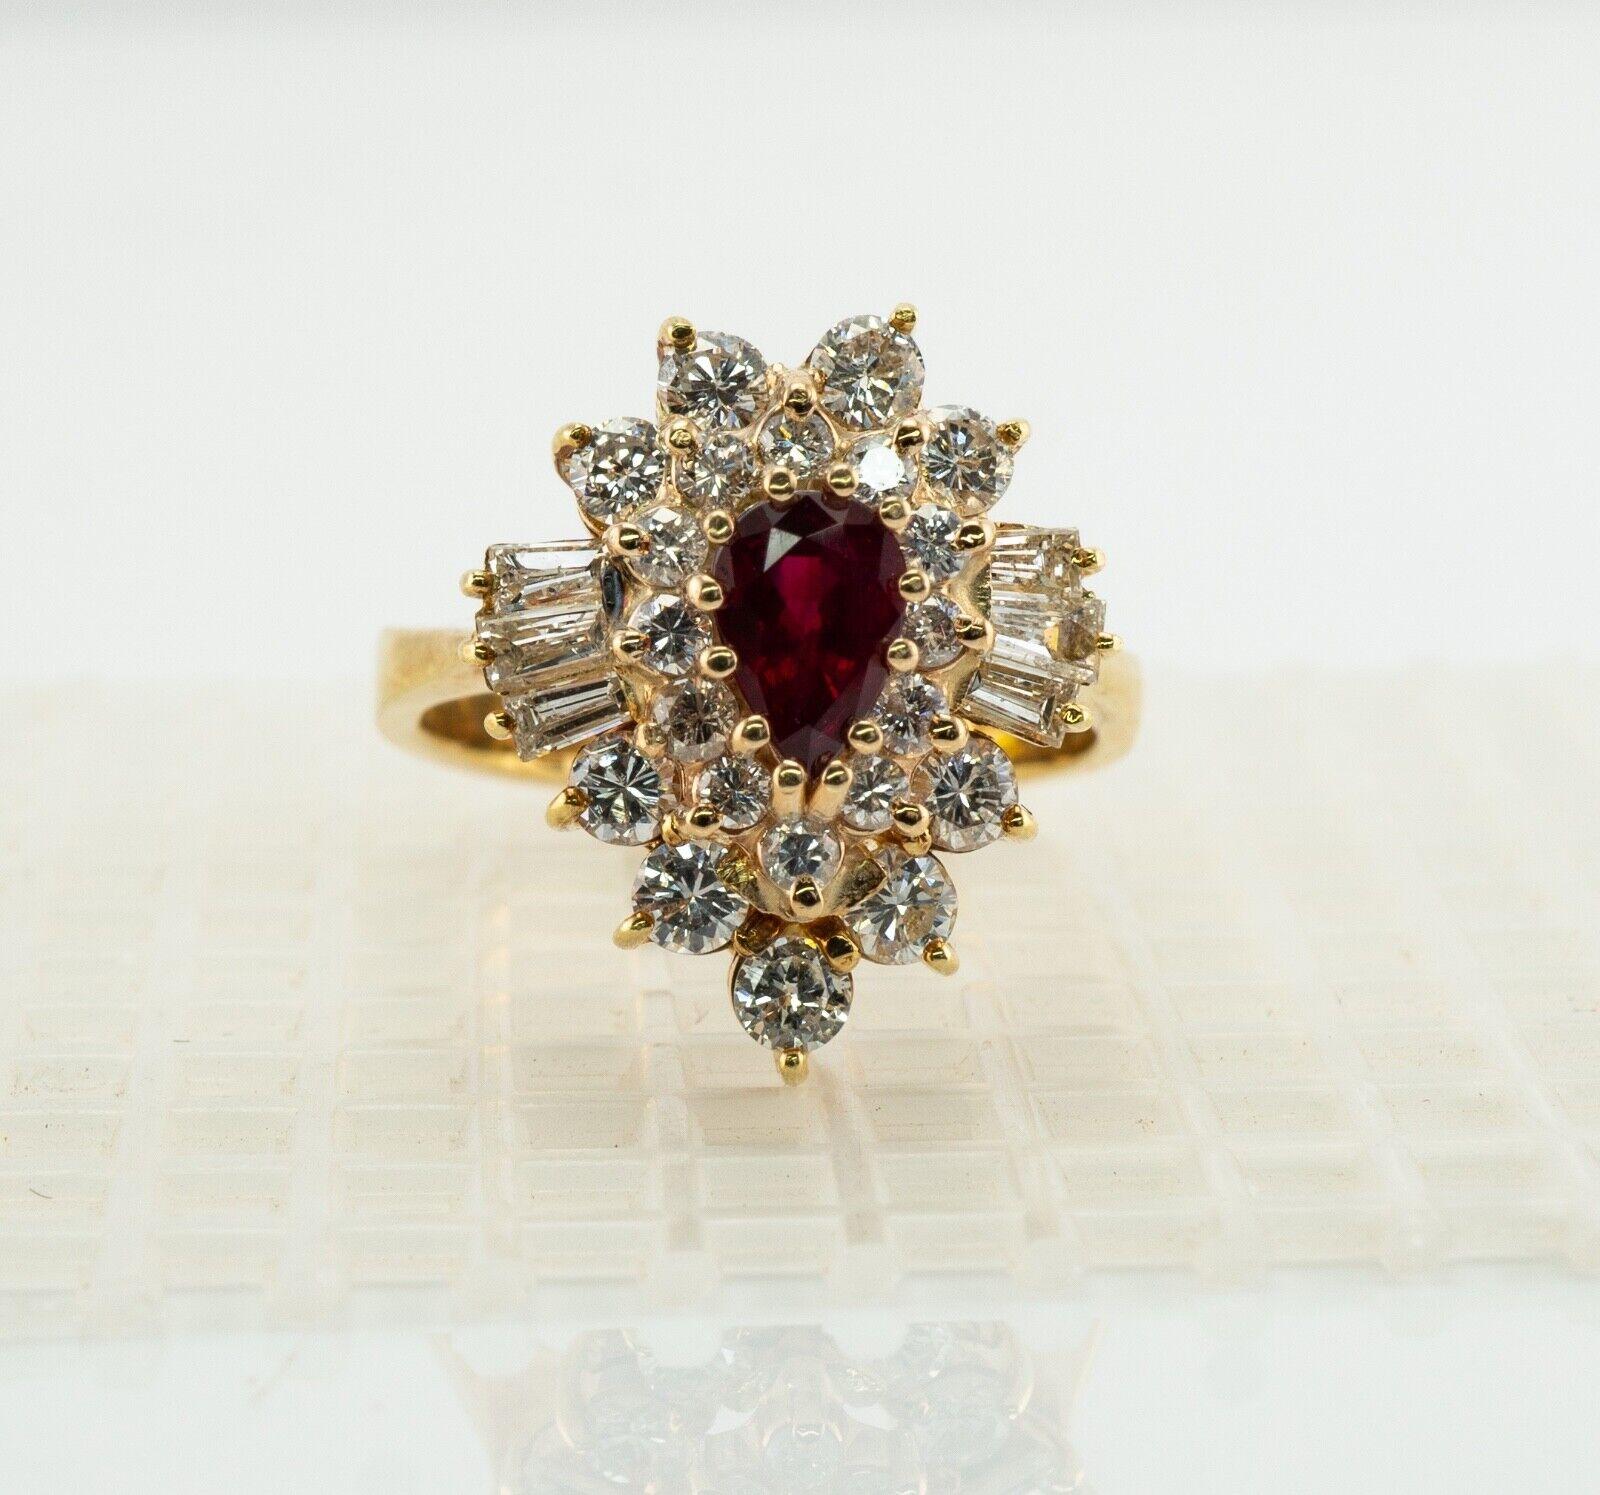 Dieser wunderschöne Ring ist aus massivem 14-karätigem Gelbgold gefertigt und mit echten Rubinen und Diamanten besetzt. Der zentrale erdgeschliffene Rubin im Birnenschliff misst 6 mm x 4 mm (0,50 Karat) und ist ein sehr sauberer und transparenter